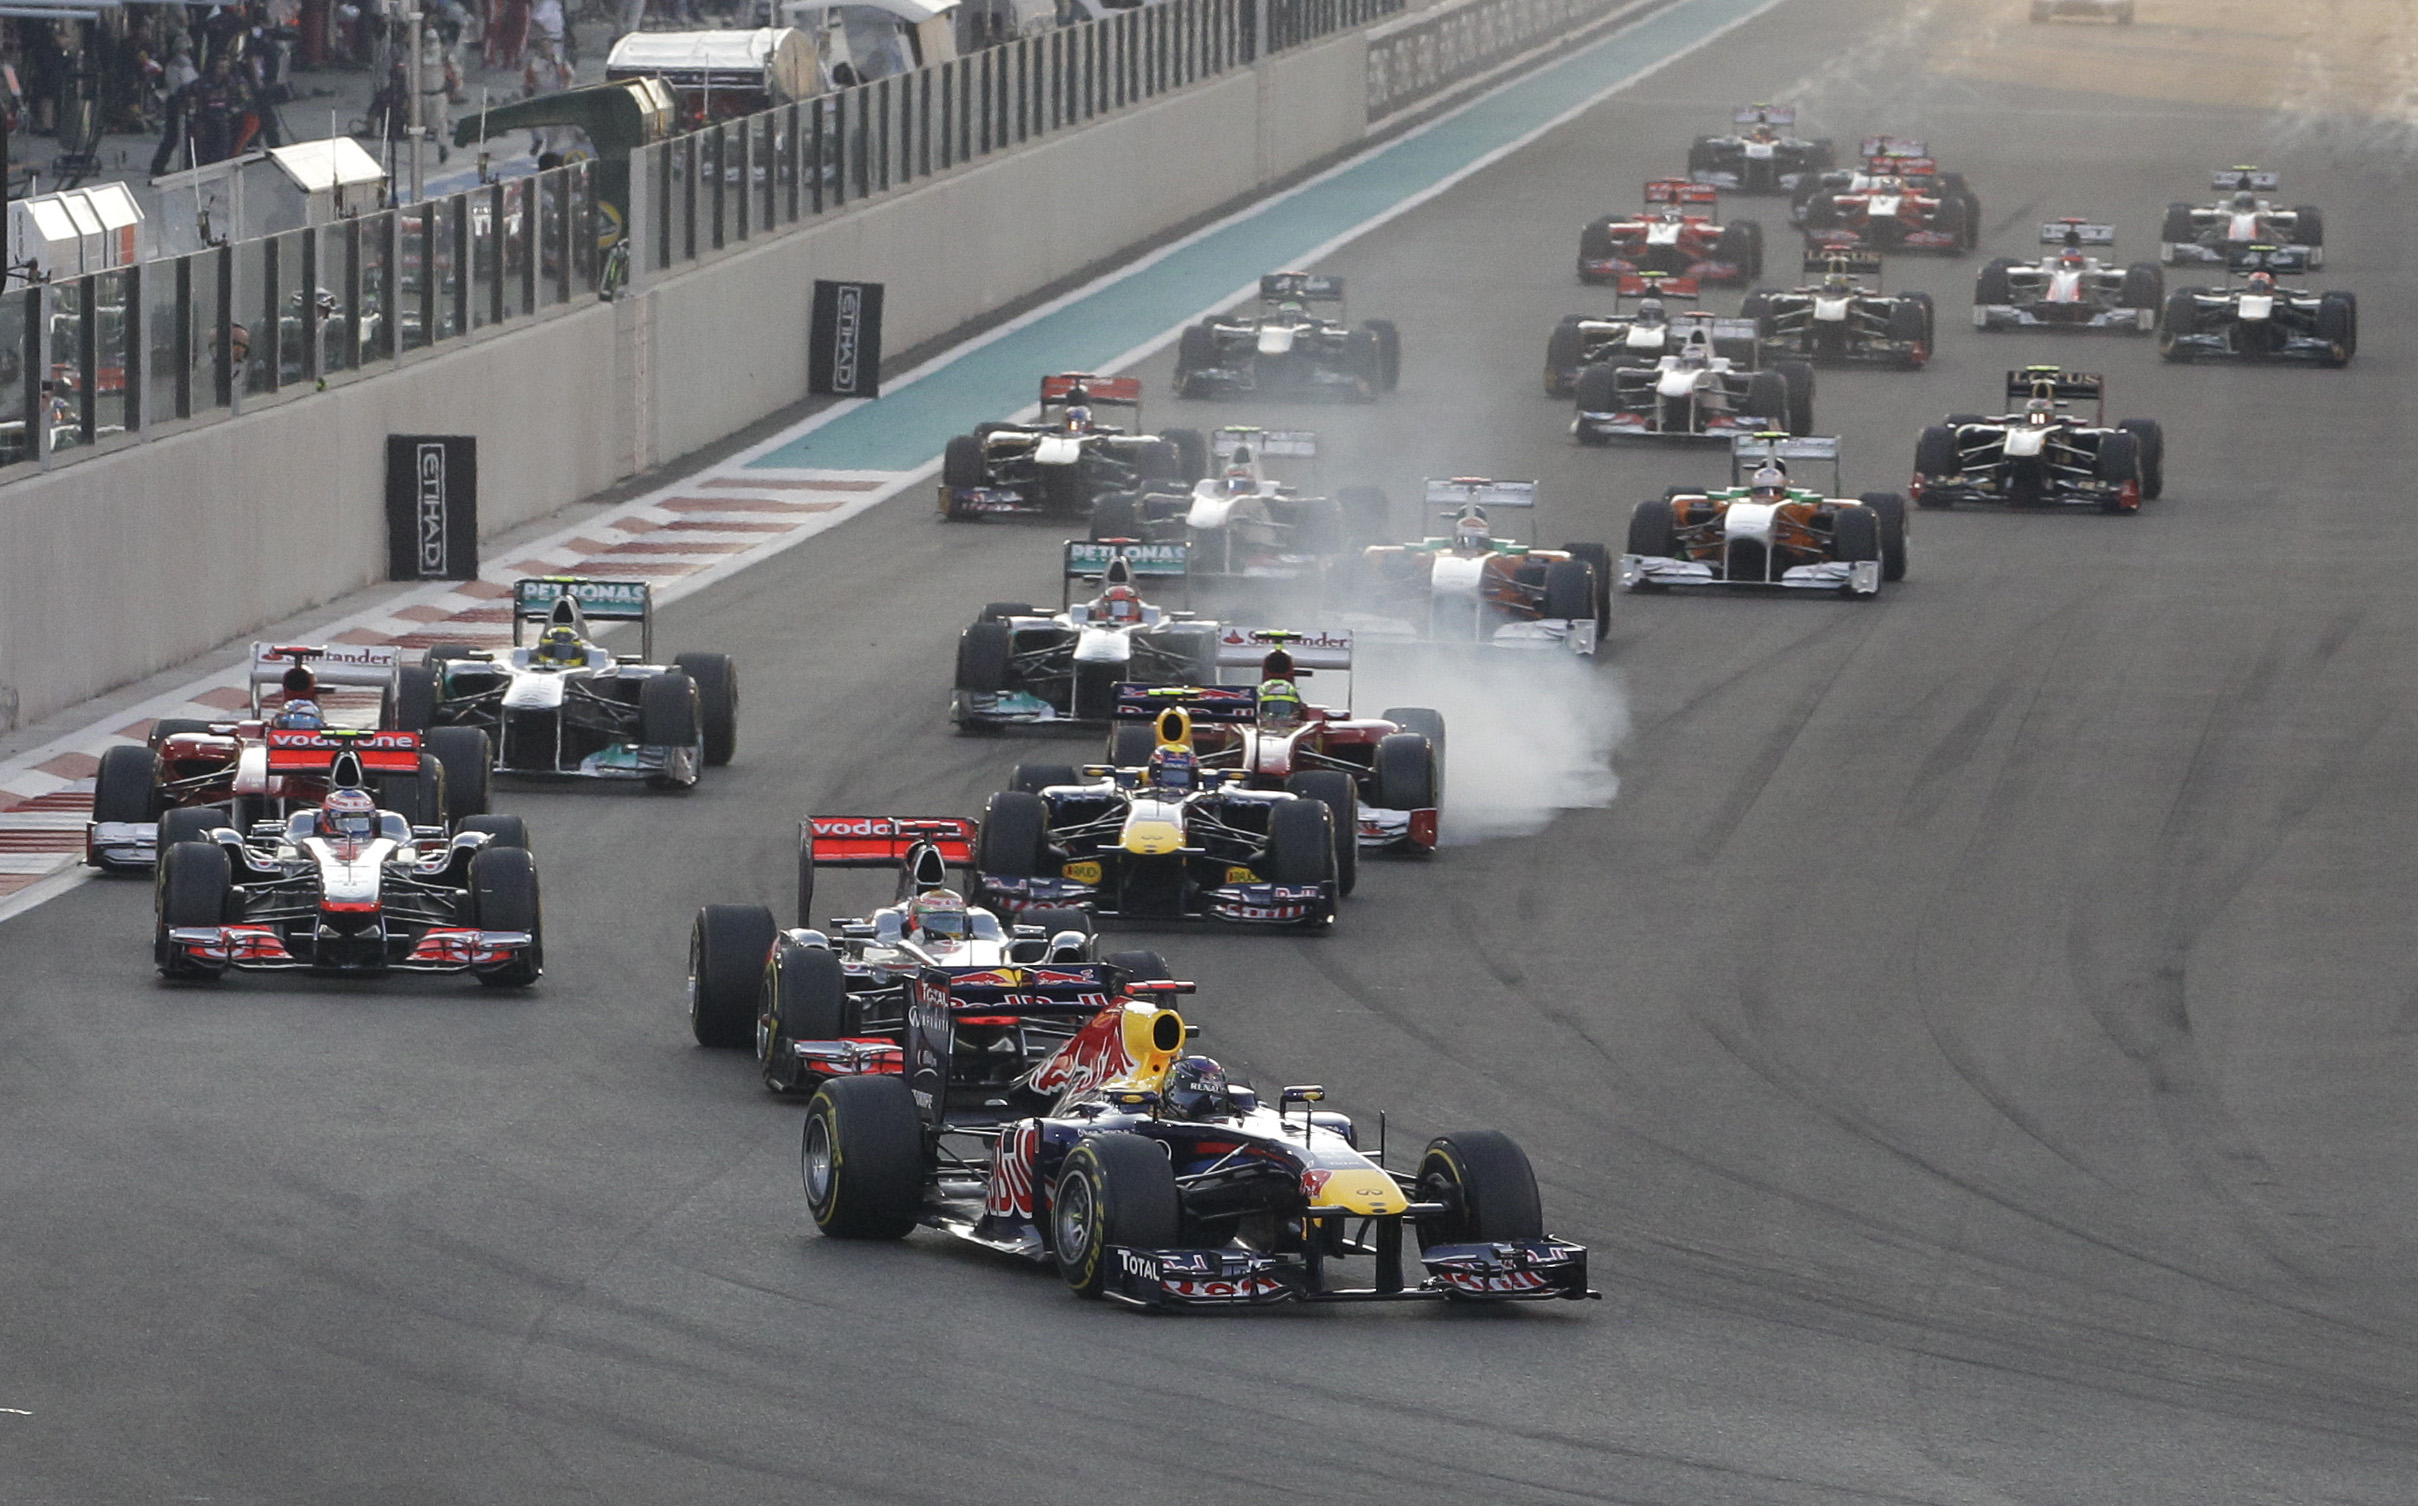 Nigel Mansell, Abu Dhabi, Lewis Hamilton, Jenson Button, Mark Webber, Fernando Alonso, Formel 1, Sebastian Vettel, Red Bull